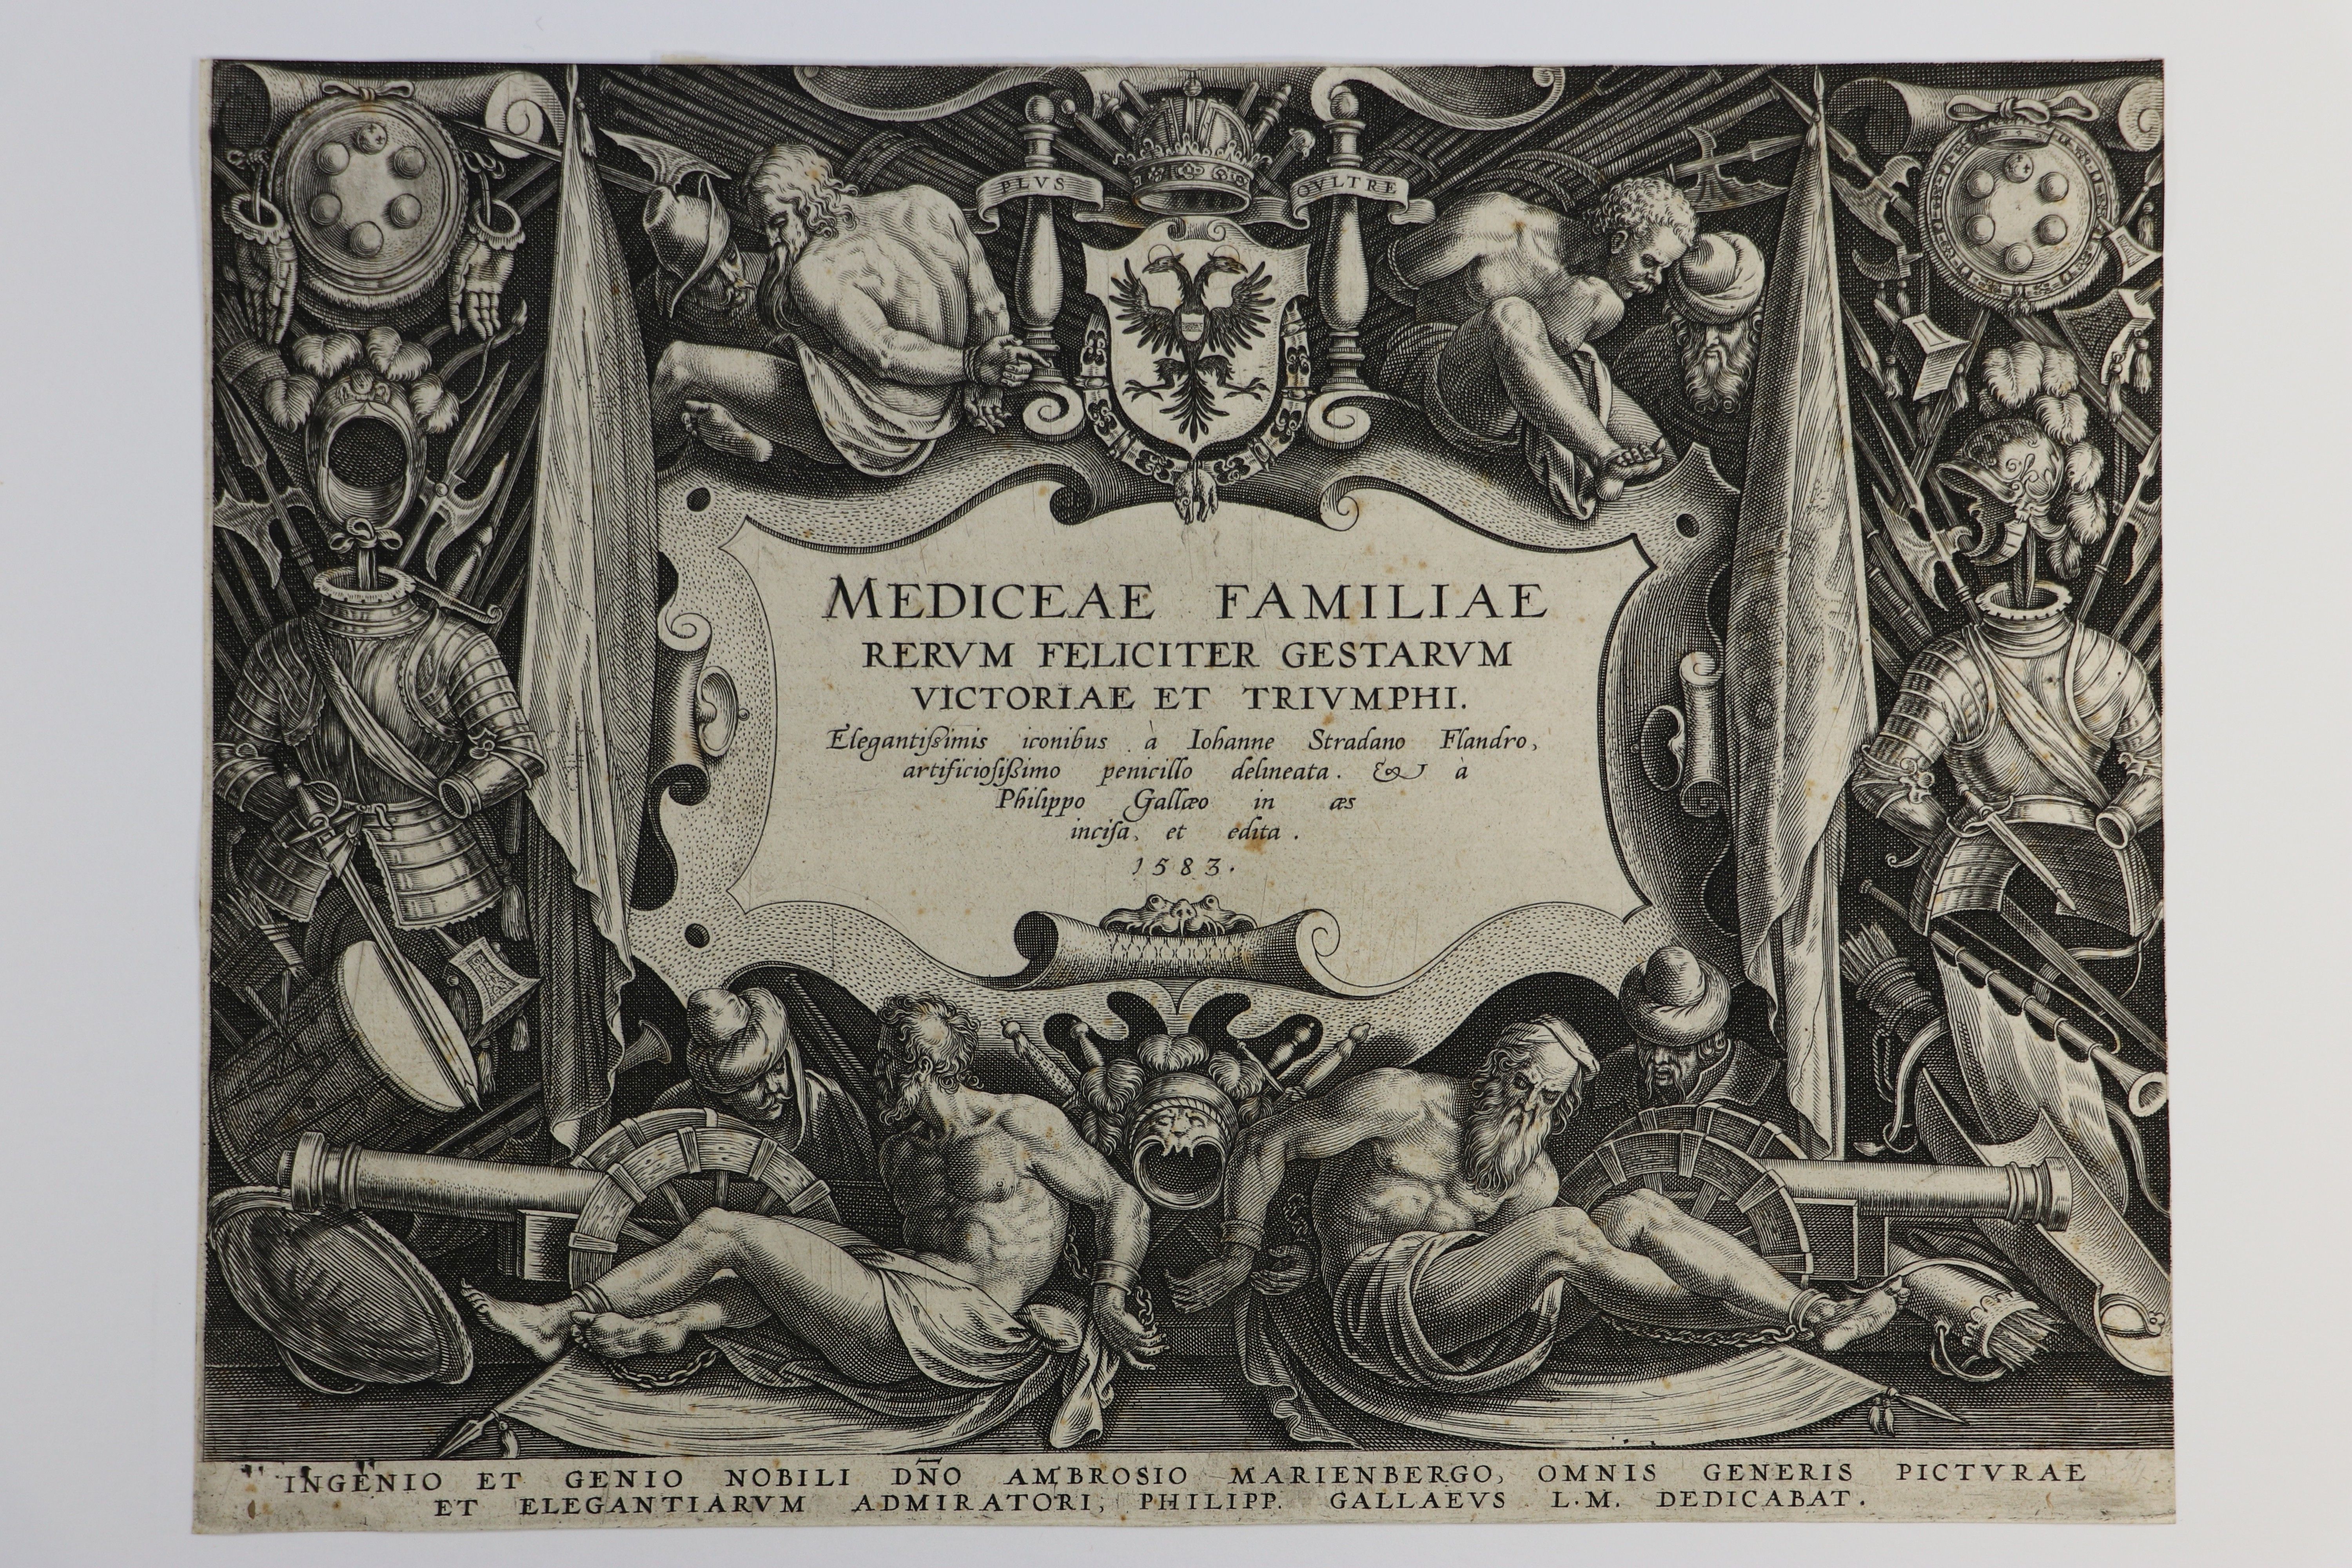 Johannes Stradanus (1523-1605)/Phillip Galle (1537-1612), Titelblatt zu den "Waffentaten der Medici", 1583 (Städtisches Museum Schloss Rheydt CC BY)